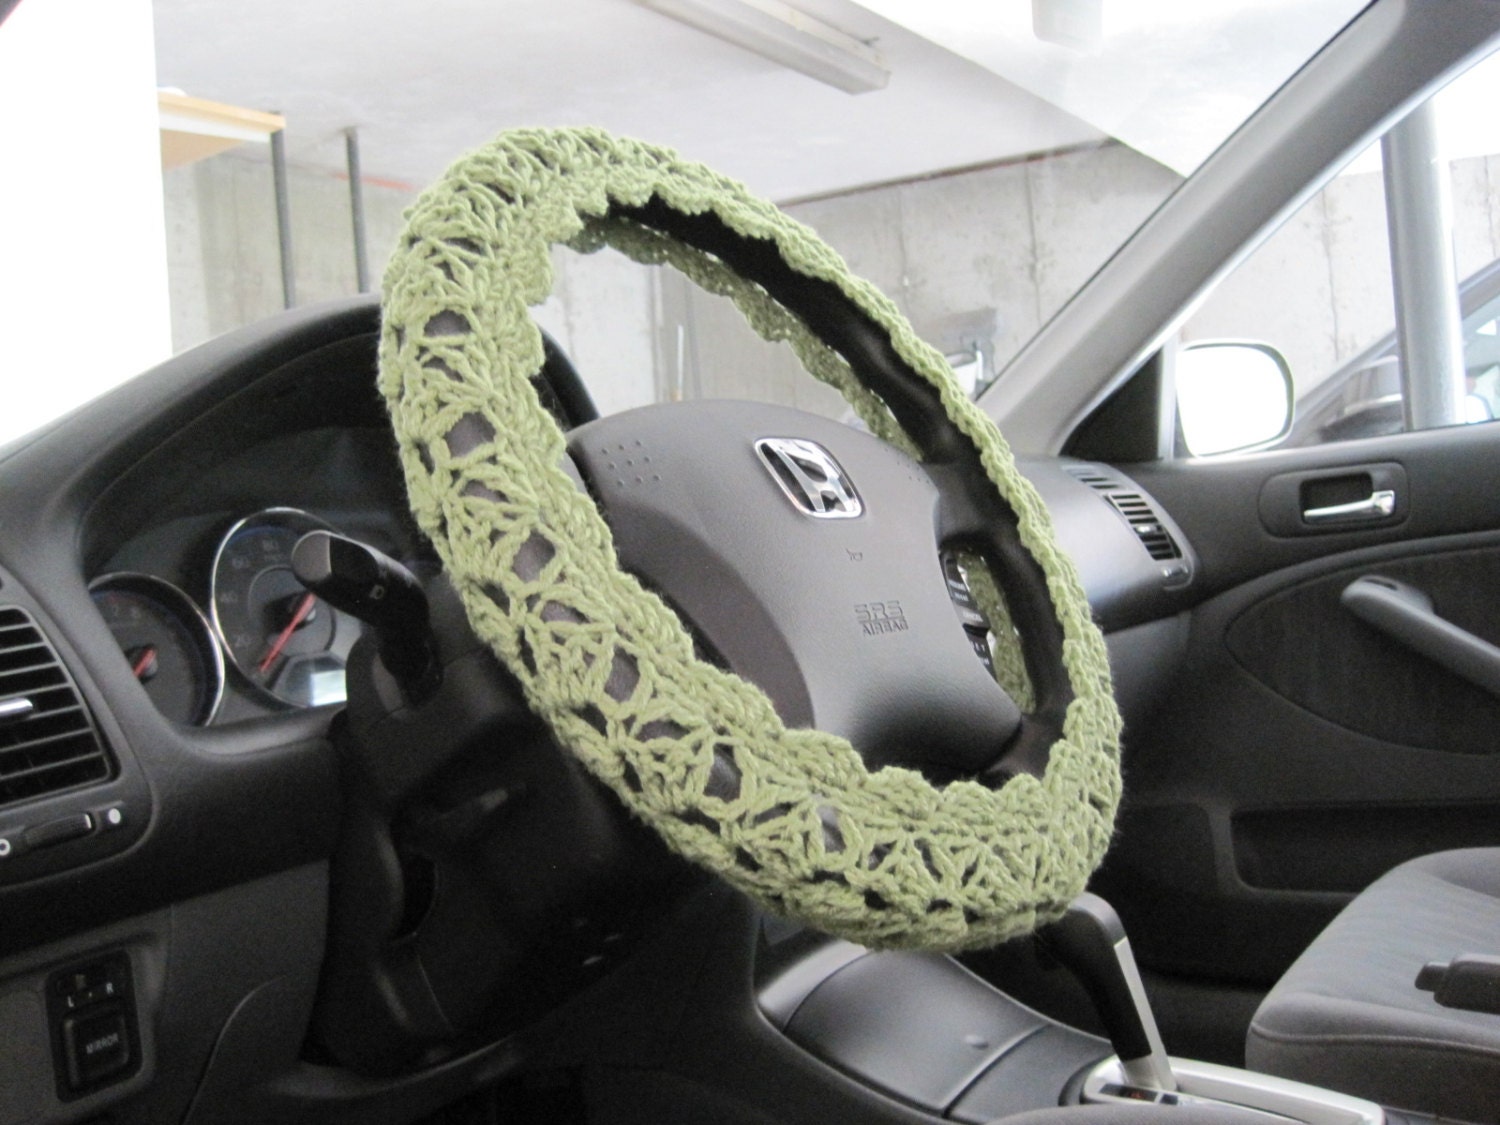 Steering Wheel Cover fot Women green Crochet Steer Wheel Cov - Inspire  Uplift